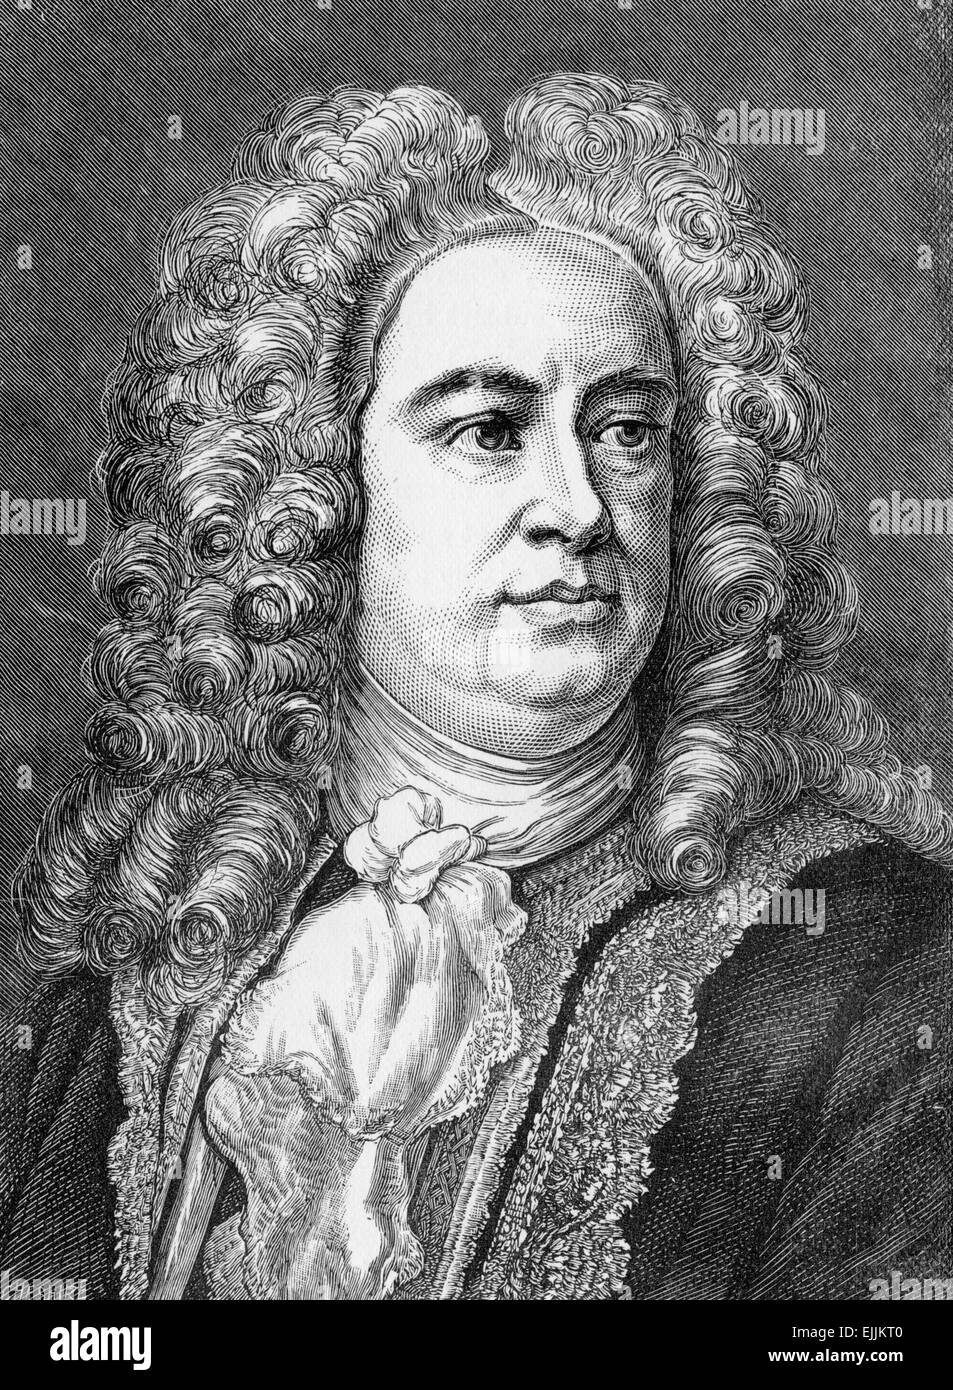 George Frideric Handel (allemand : Georg Friedrich Händel ; 1685 - 1759) était un compositeur baroque britannique Banque D'Images